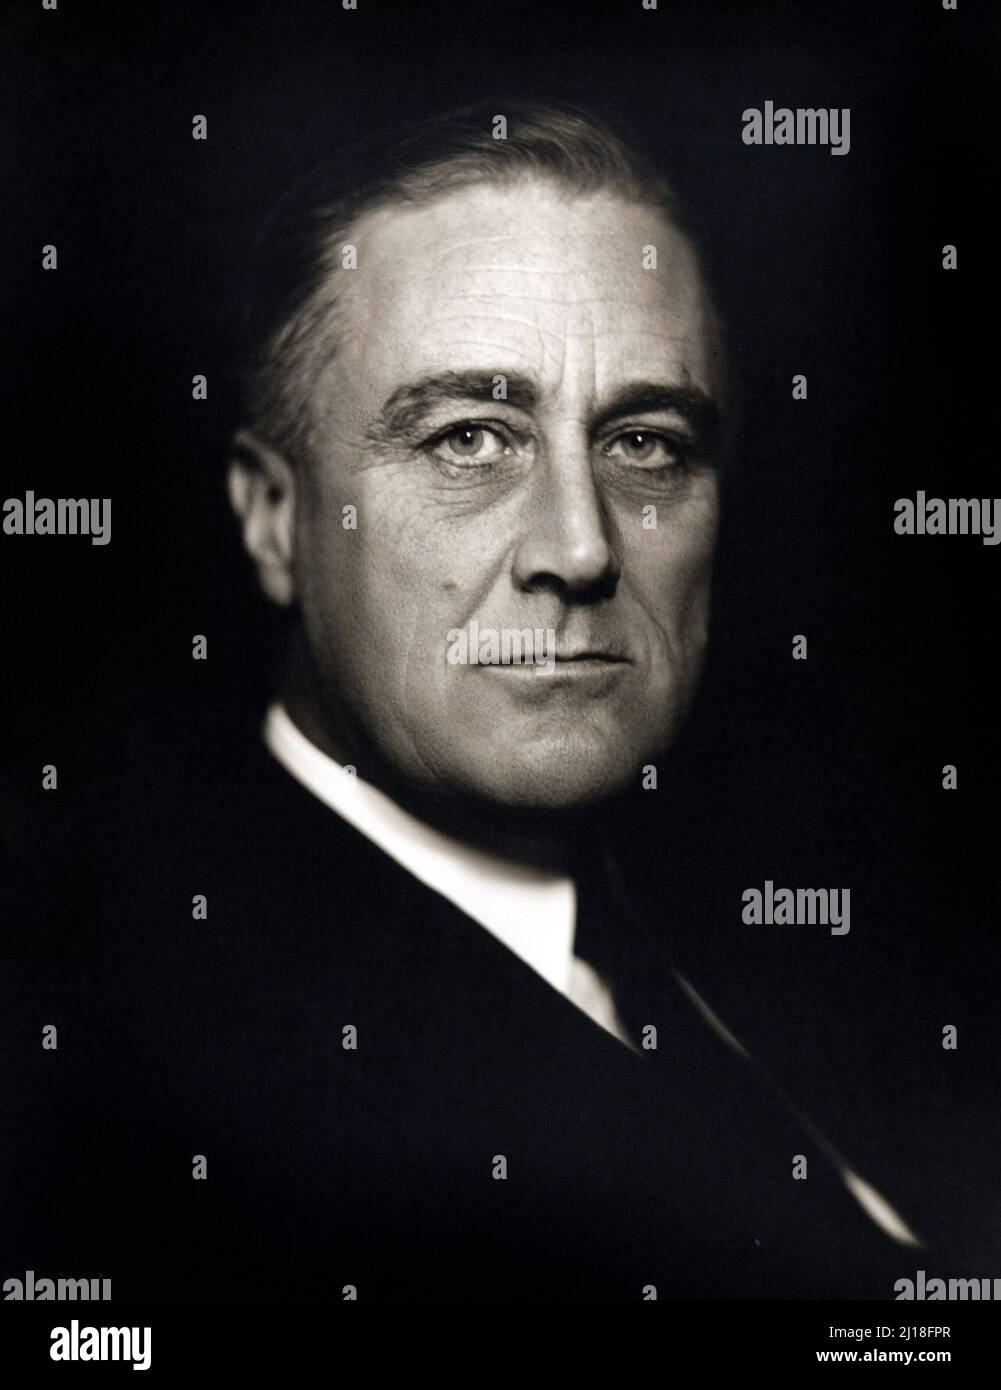 Porträt von Franklin D. Roosevelt (1882-1945), dem Präsidenten der USA von 32., von Vincenzo Laviosa, c.. 1932 Stockfoto